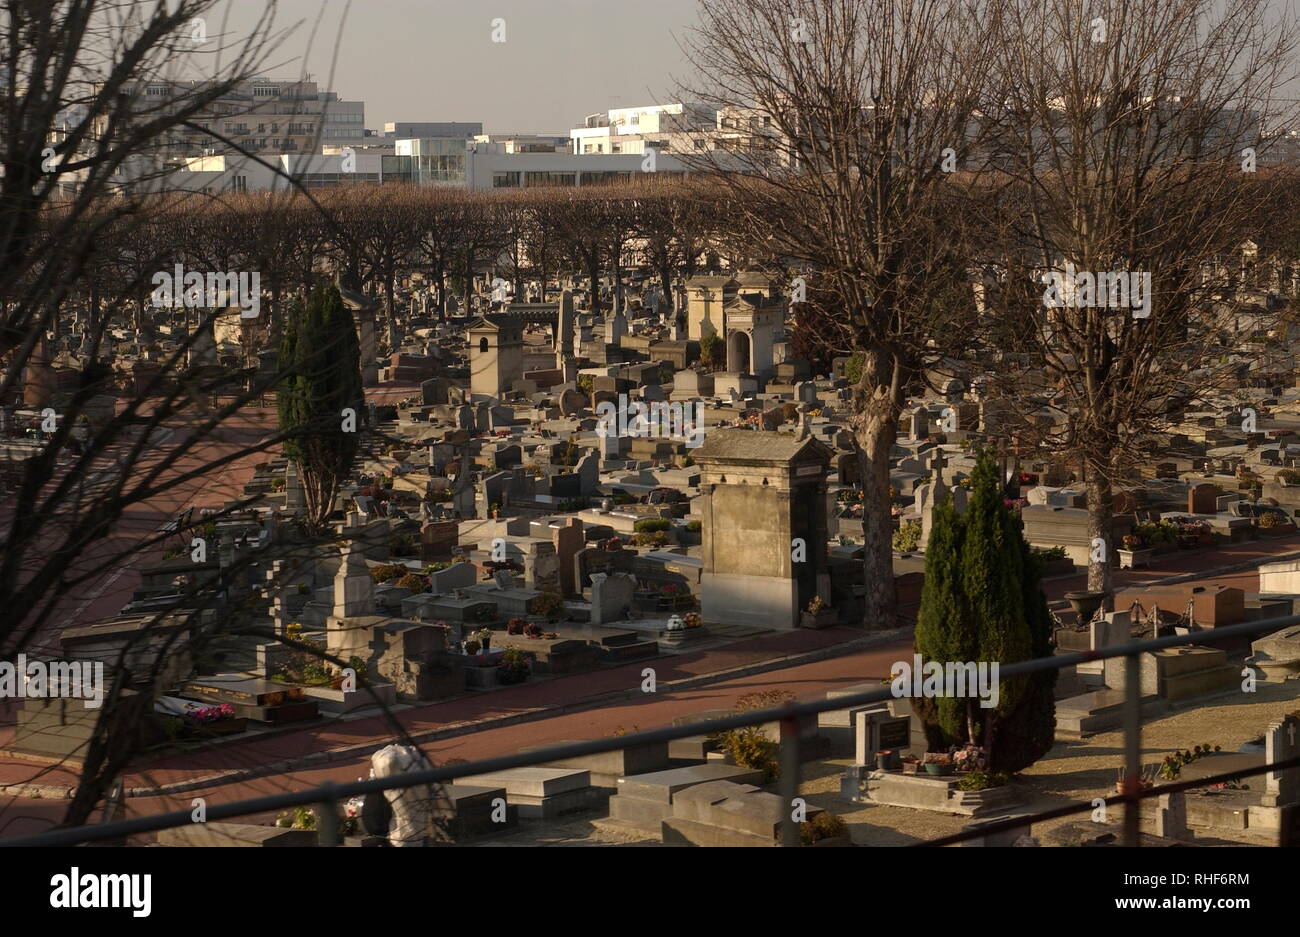 AJAXNETPHOTO. LEVALLOIS PERRET , PARIS, Francia - luogo di sepoltura - UN ANGOLO DEL CIMITIERE LEVALLOIS-PERRET. Foto:JONATHAN EASTLAND/AJAX REF:D82712 1831 Foto Stock